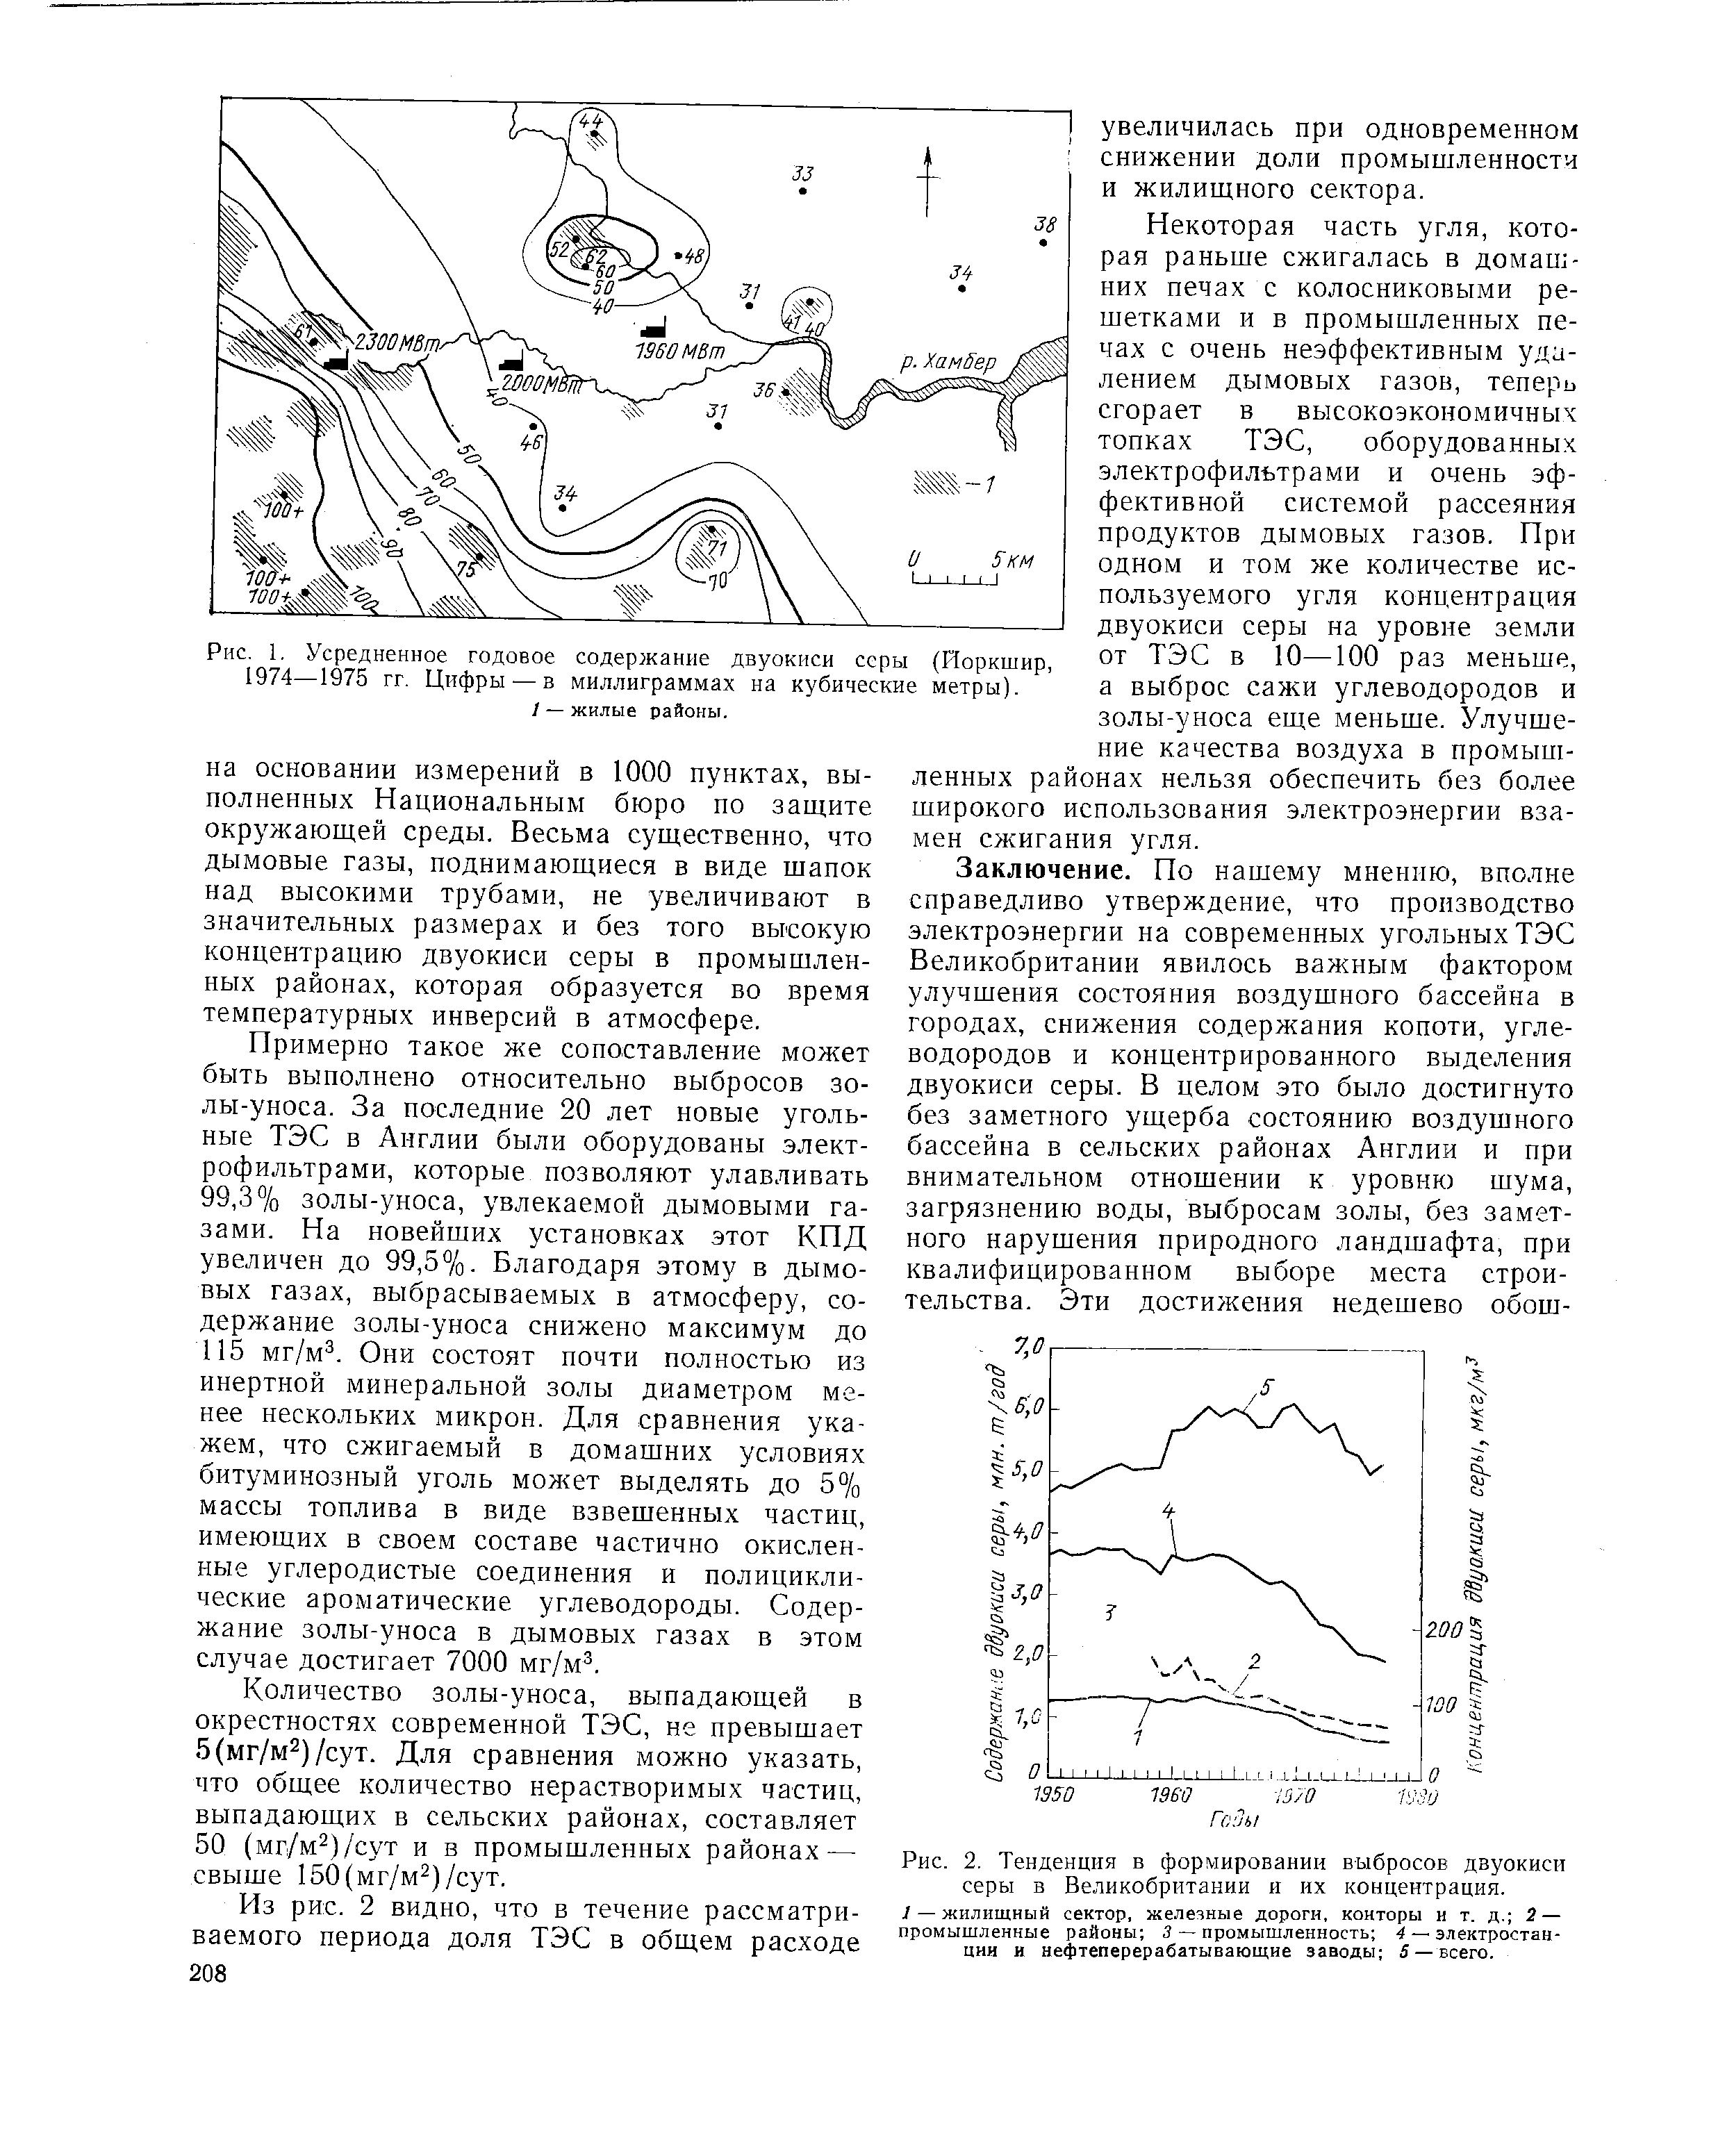 Рис. 1, Усредненное годовое содержание двуокиси серы (Йоркшир, 1974—1975 гг. Цифры — в миллиграммах на кубические метры).
